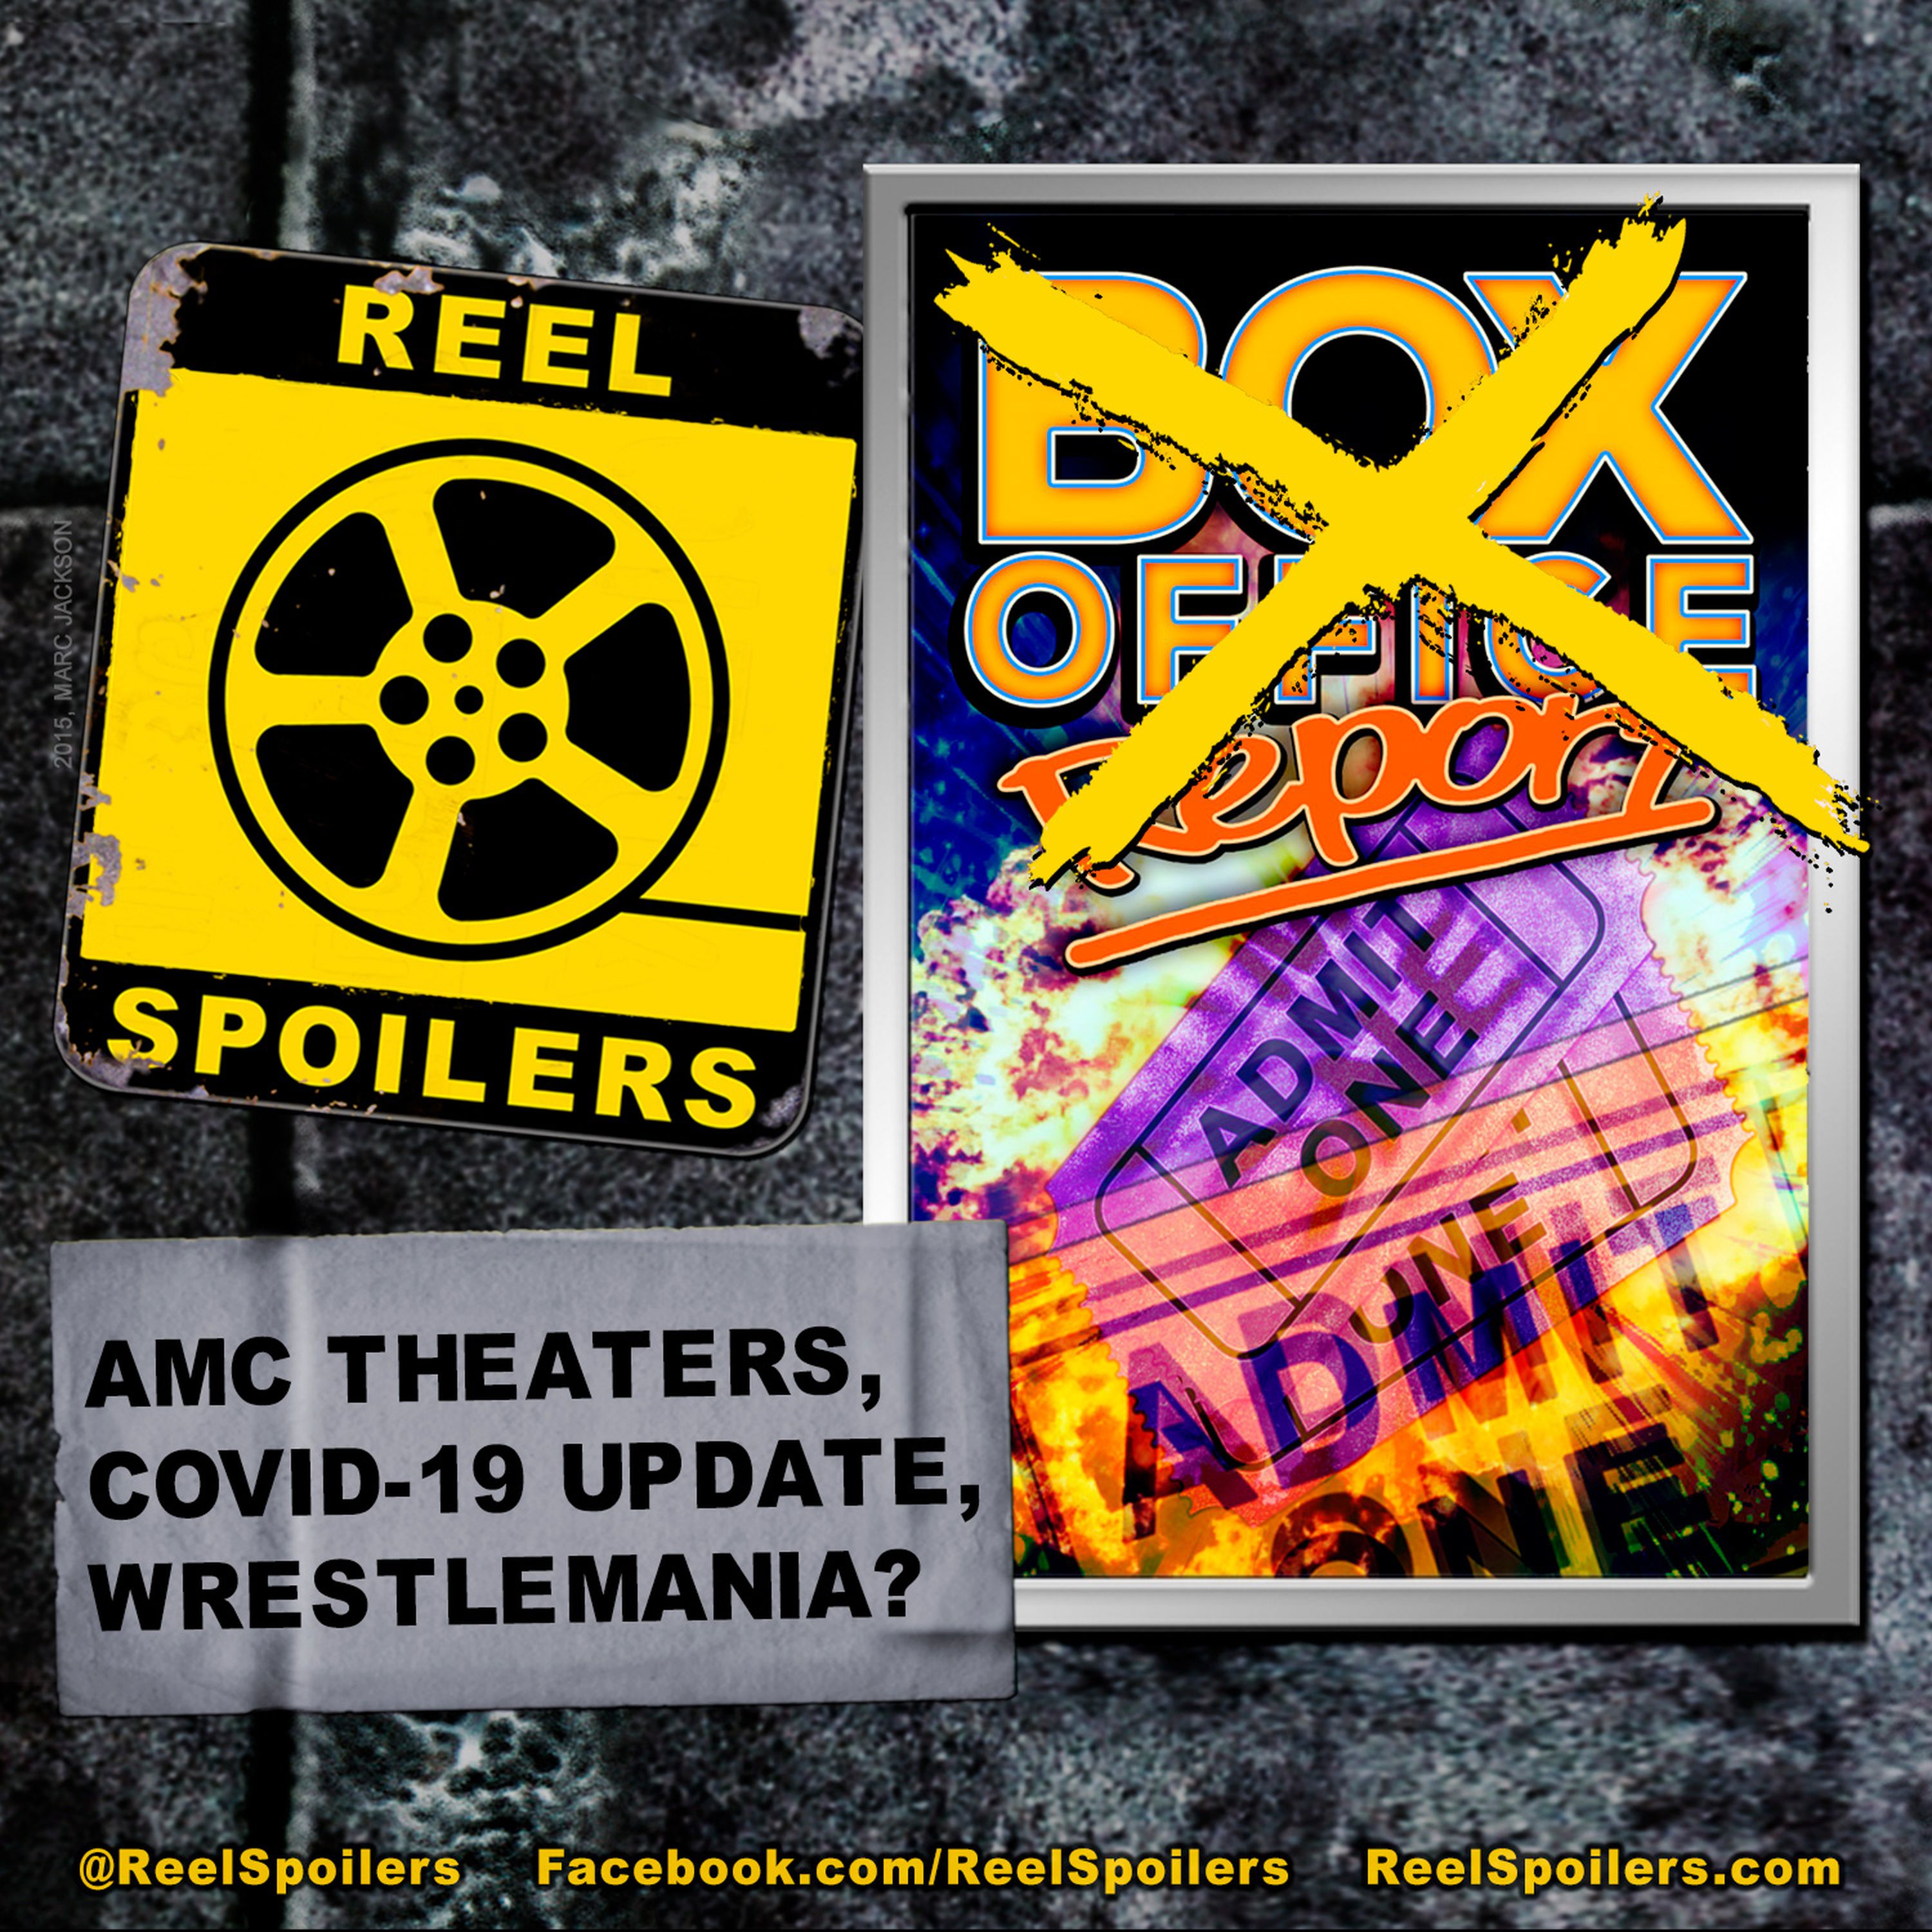 No Box Office, AMC in Trouble, Coronavirus Update Image